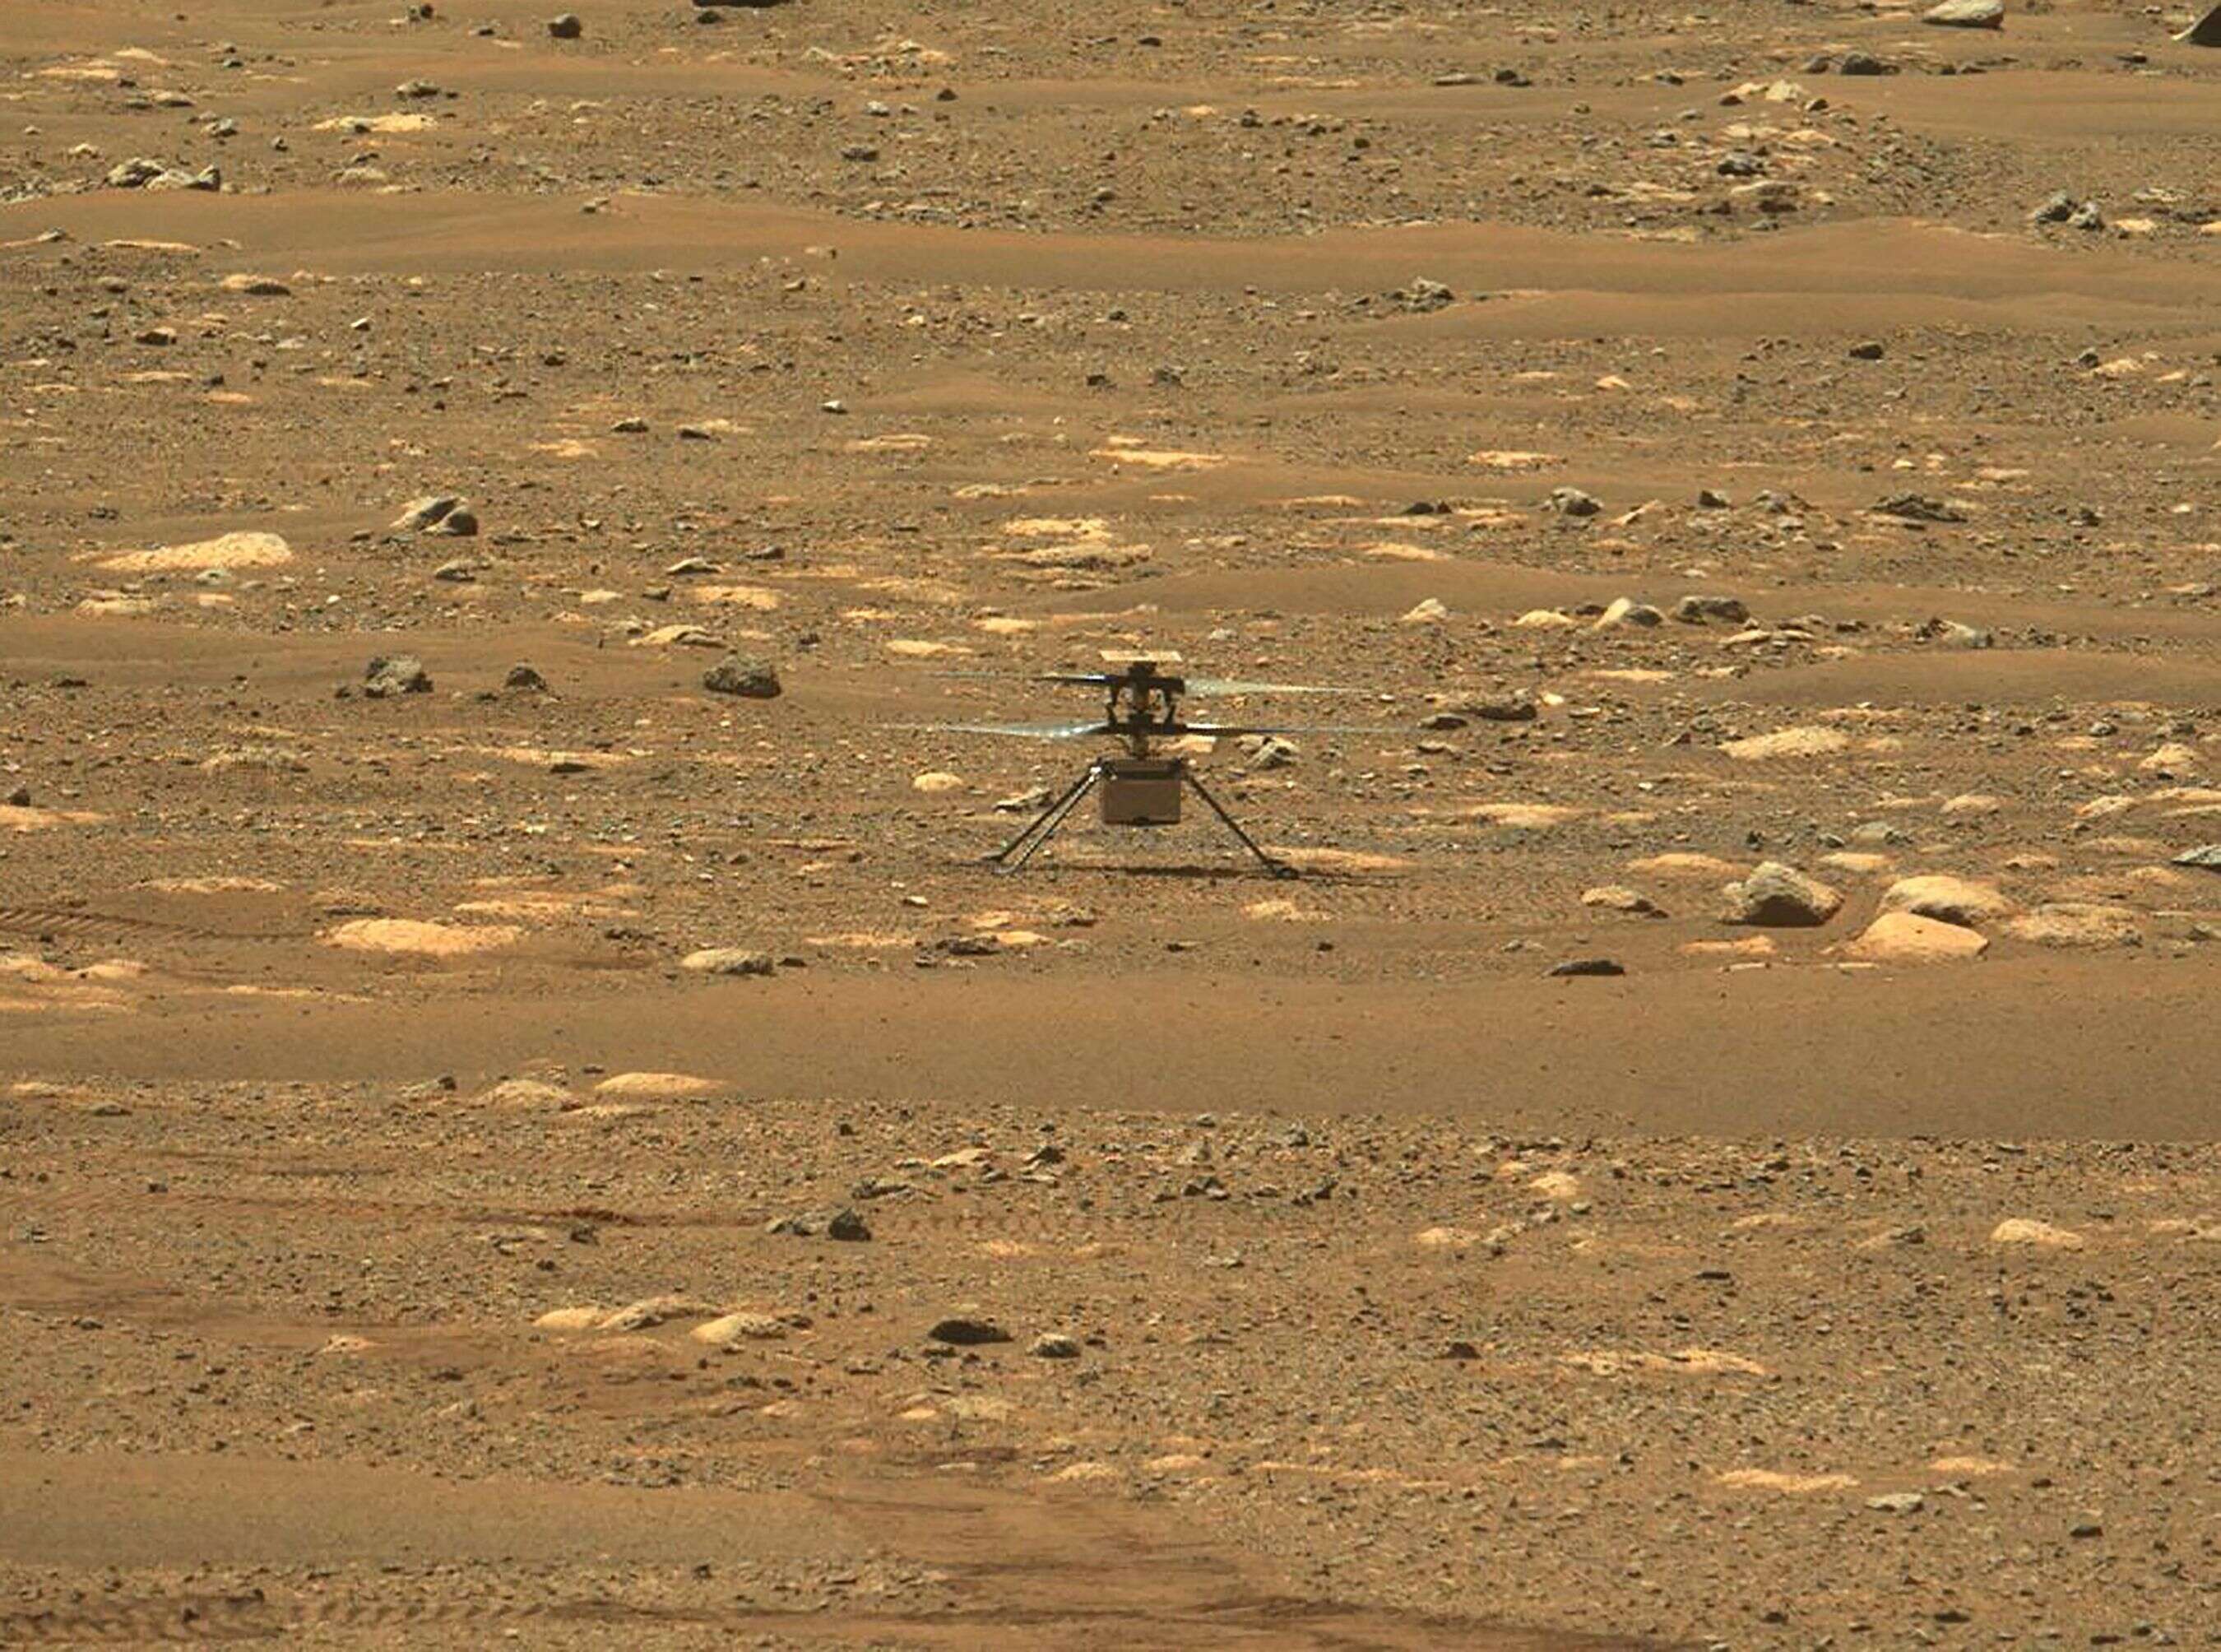 Vendredi 7 mai, la Nasa a rendu public pour la première fois l'enregistrement du son causé par les pales de l'hélicoptère Ingenuity sur Mars durant son vol. Les chercheurs ne savaient pas si l'atmosphère de la planète permettrait de capter un tel son.